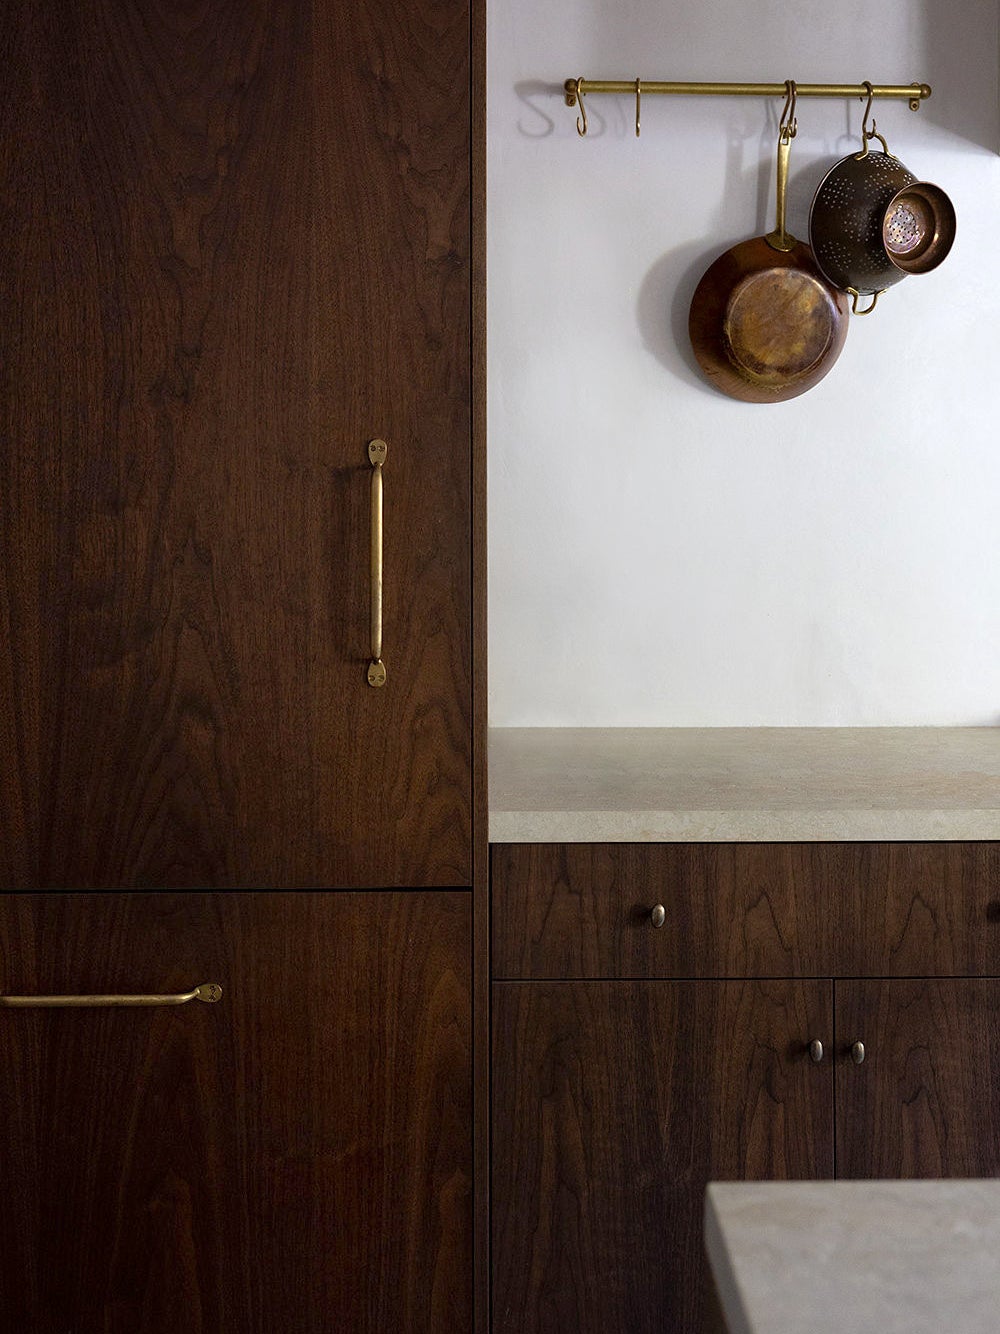 Dark brown wood kitchen cabinets